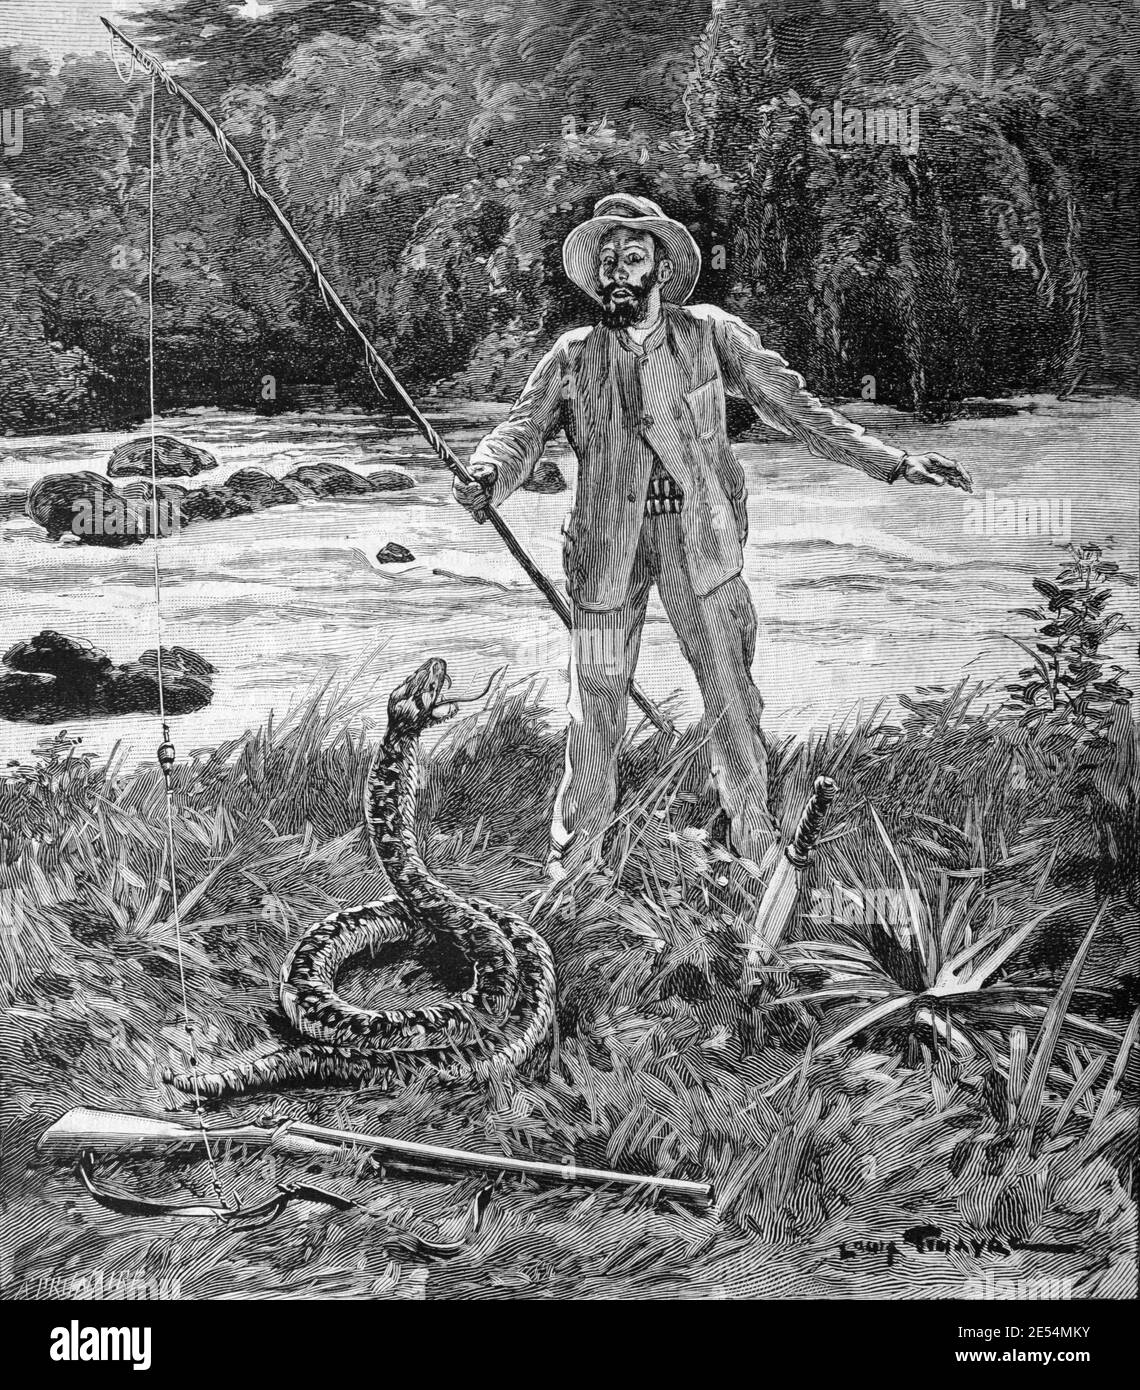 Esploratore in Amazon, Amazon River & enorme serpente o gigante Serpent  1902 Vintage Illustrazione o incisione Foto stock - Alamy